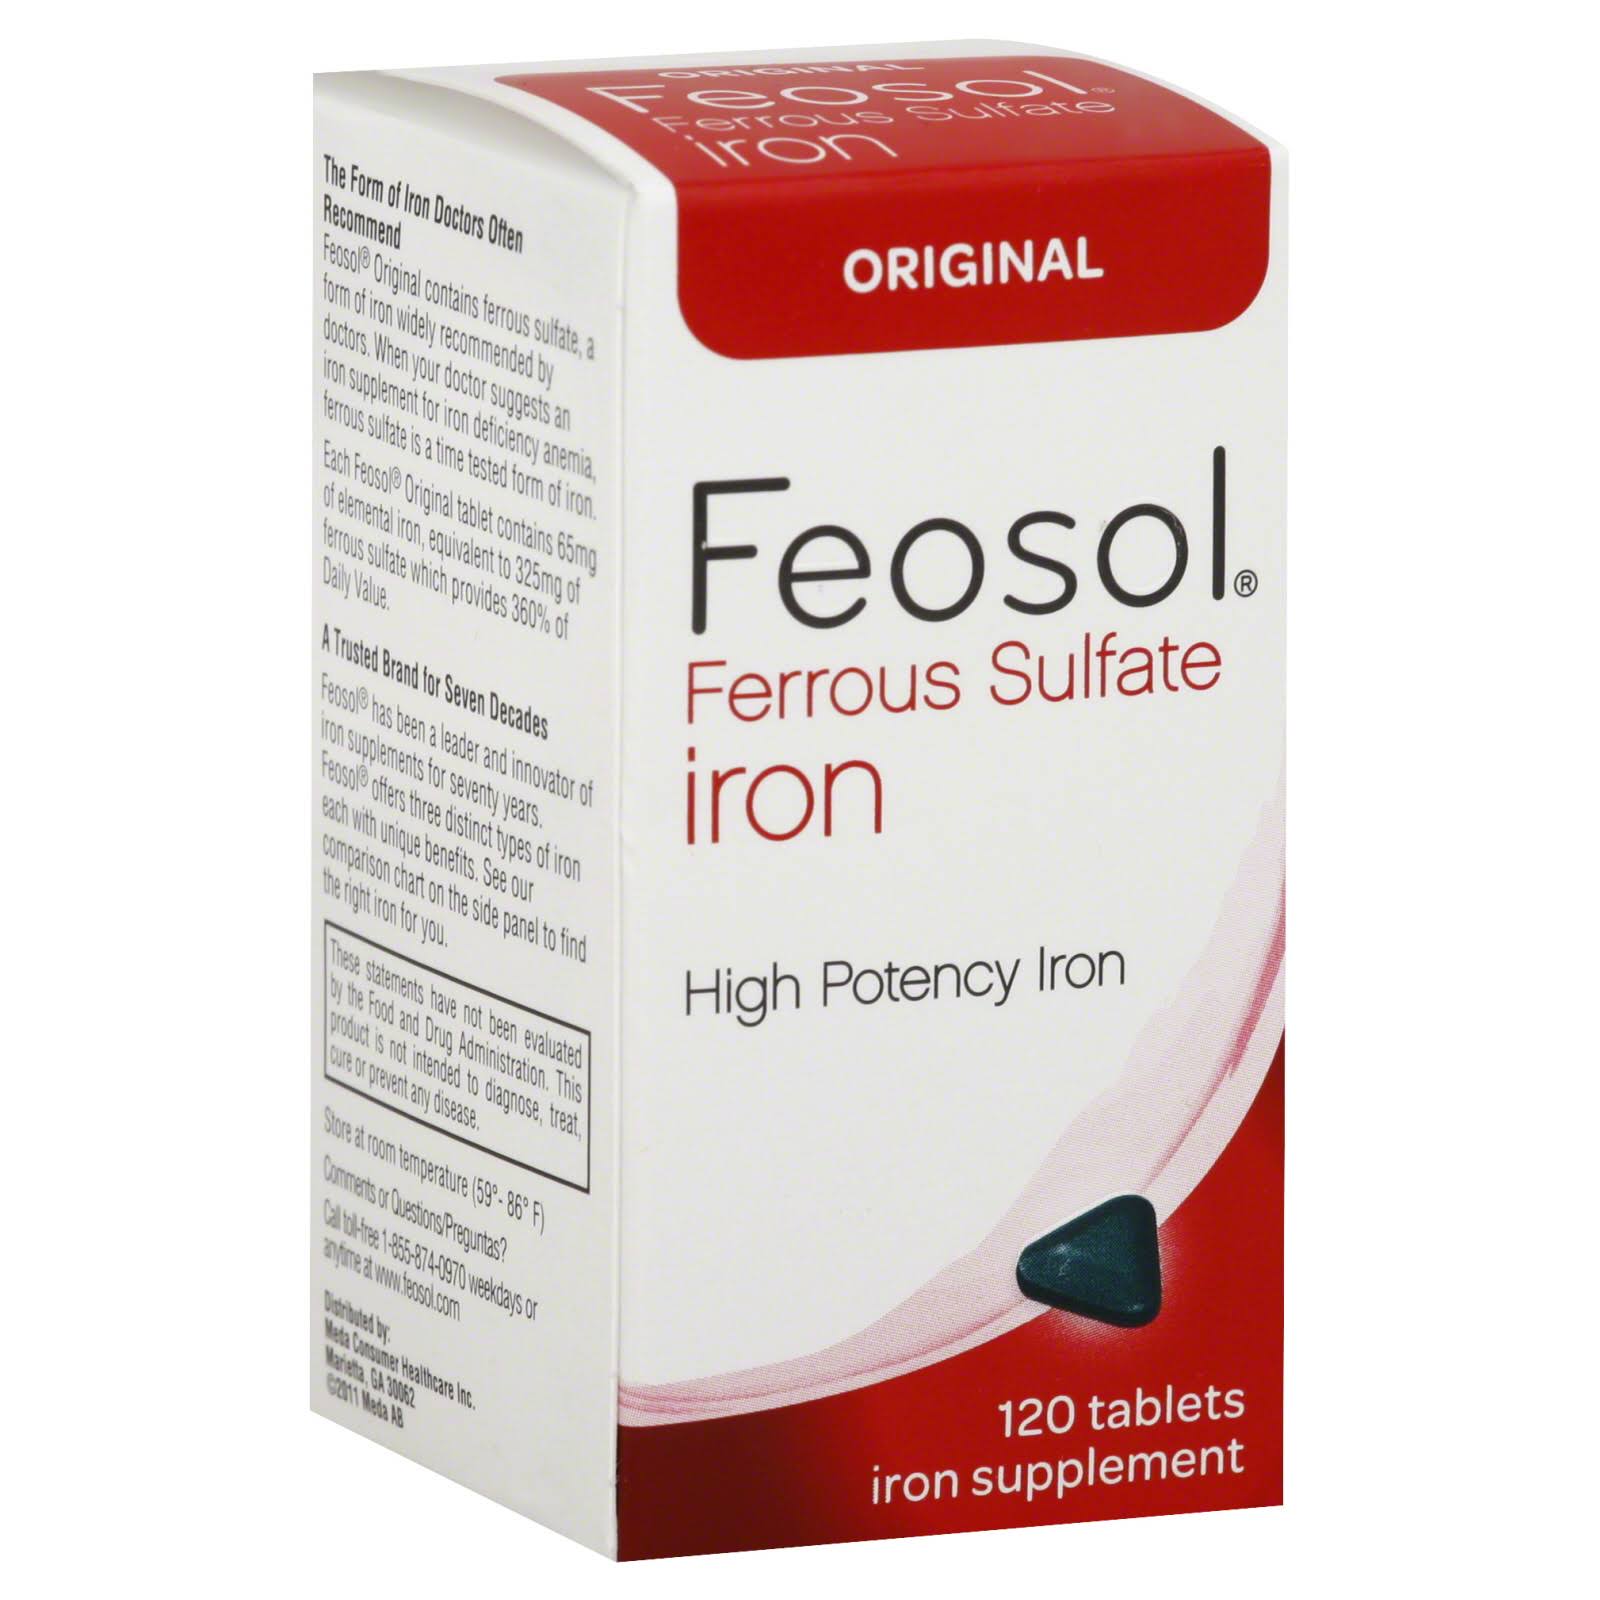 Feosol Original Ferrous Sulfate Iron Supplement